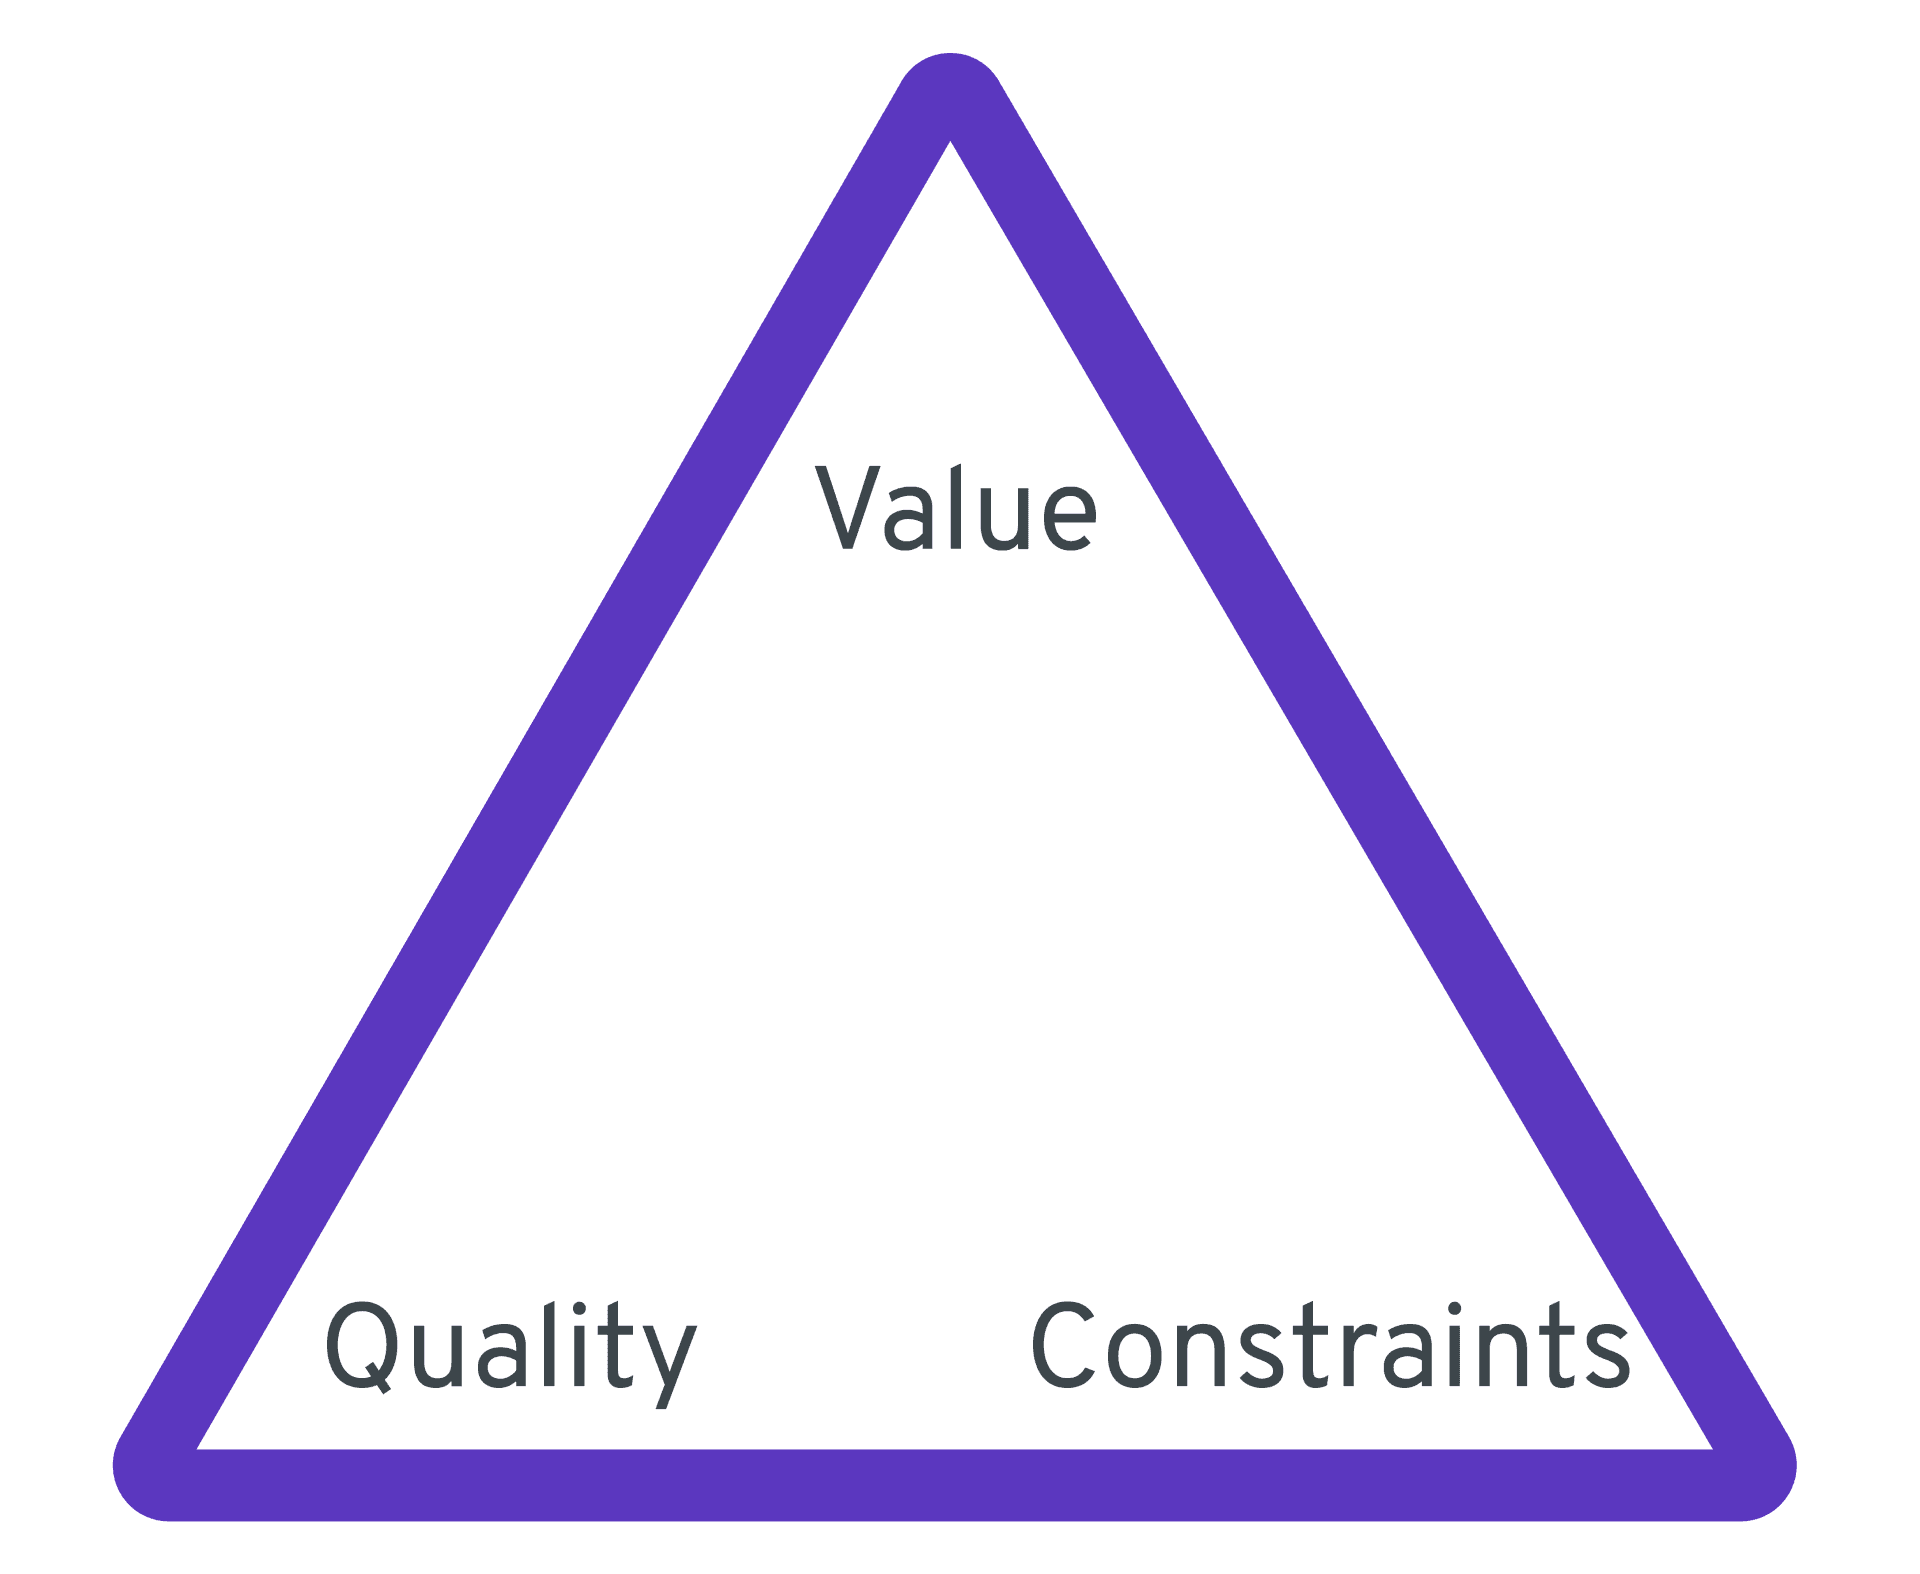 Aidosti Agile muodostuu kolmikannasta joiden kärkinä ovat arvo, laatu ja yhdessä kärjessä perinteisen kolmion muuttujat (laajuus, budjetti ja aikataulu).